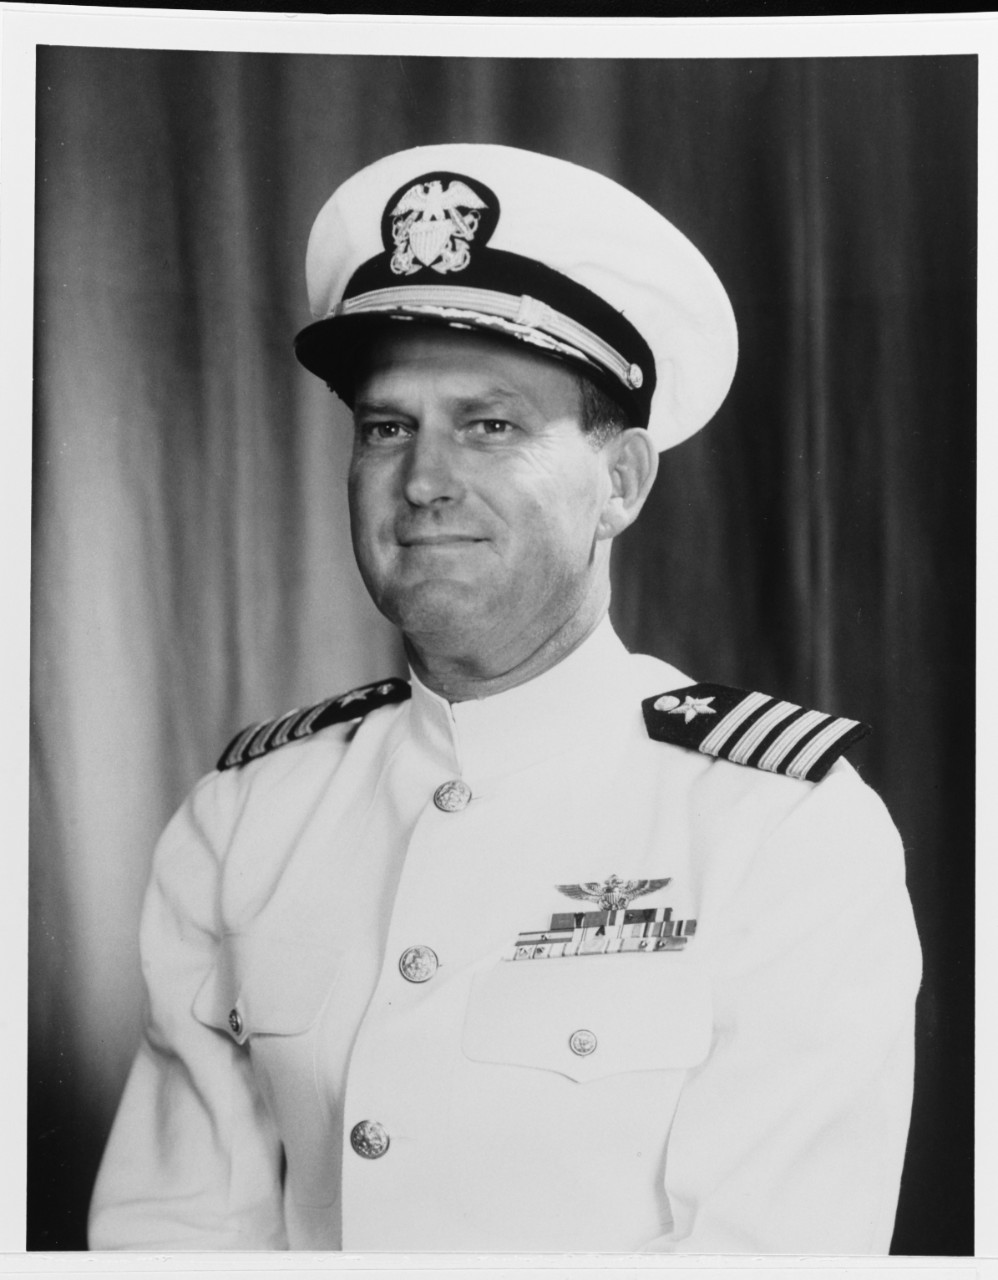 Captain David L. McDonald, USN